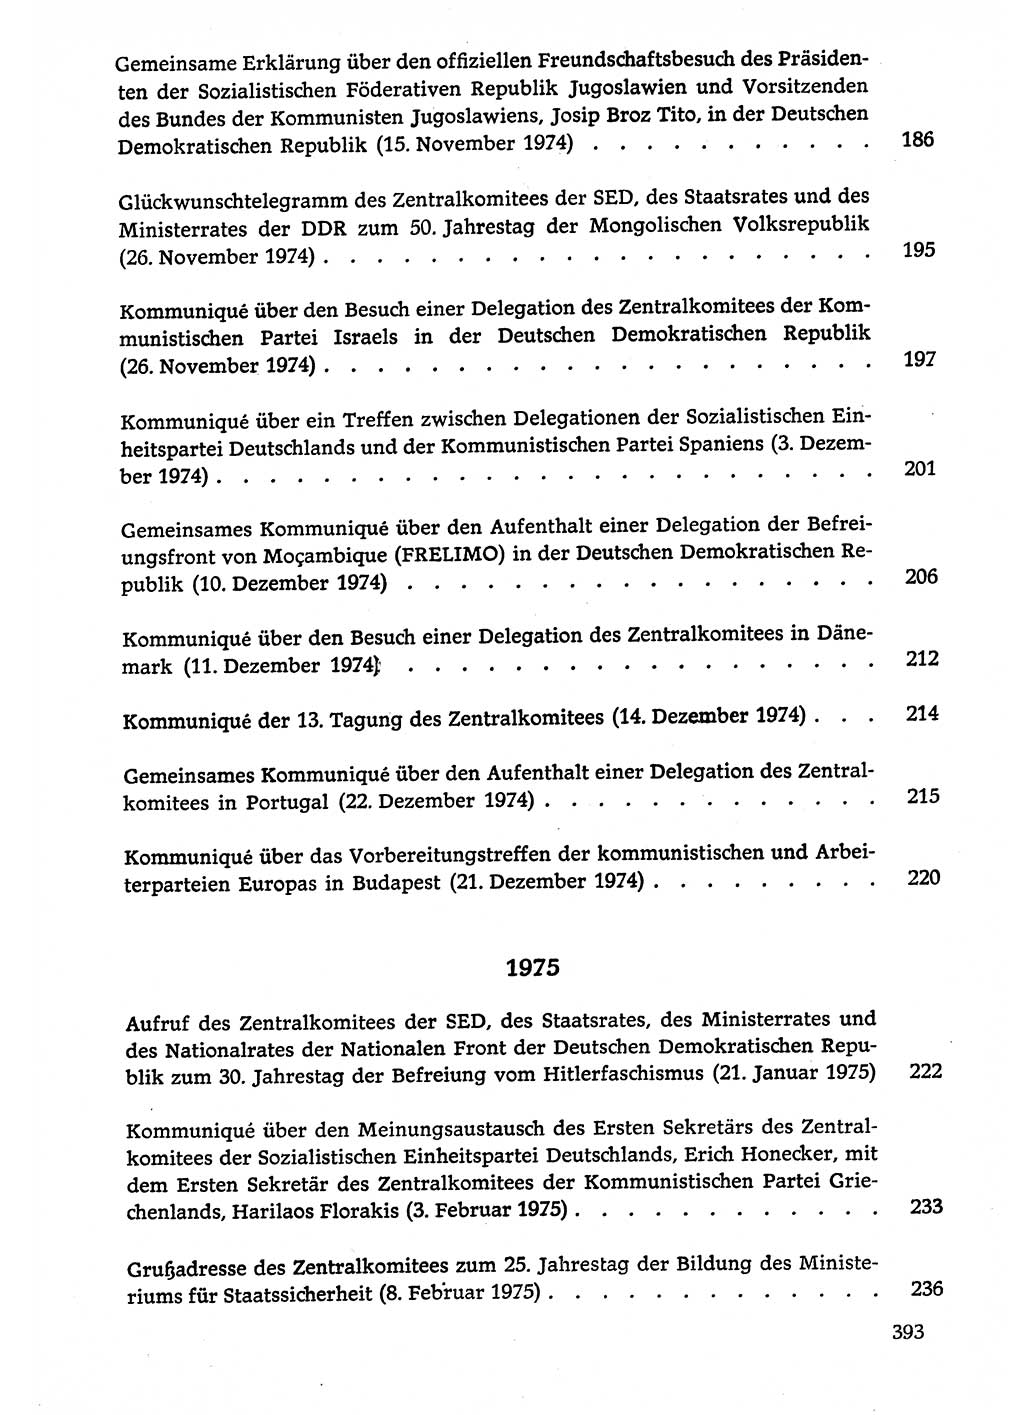 Dokumente der Sozialistischen Einheitspartei Deutschlands (SED) [Deutsche Demokratische Republik (DDR)] 1974-1975, Seite 393 (Dok. SED DDR 1978, Bd. ⅩⅤ, S. 393)